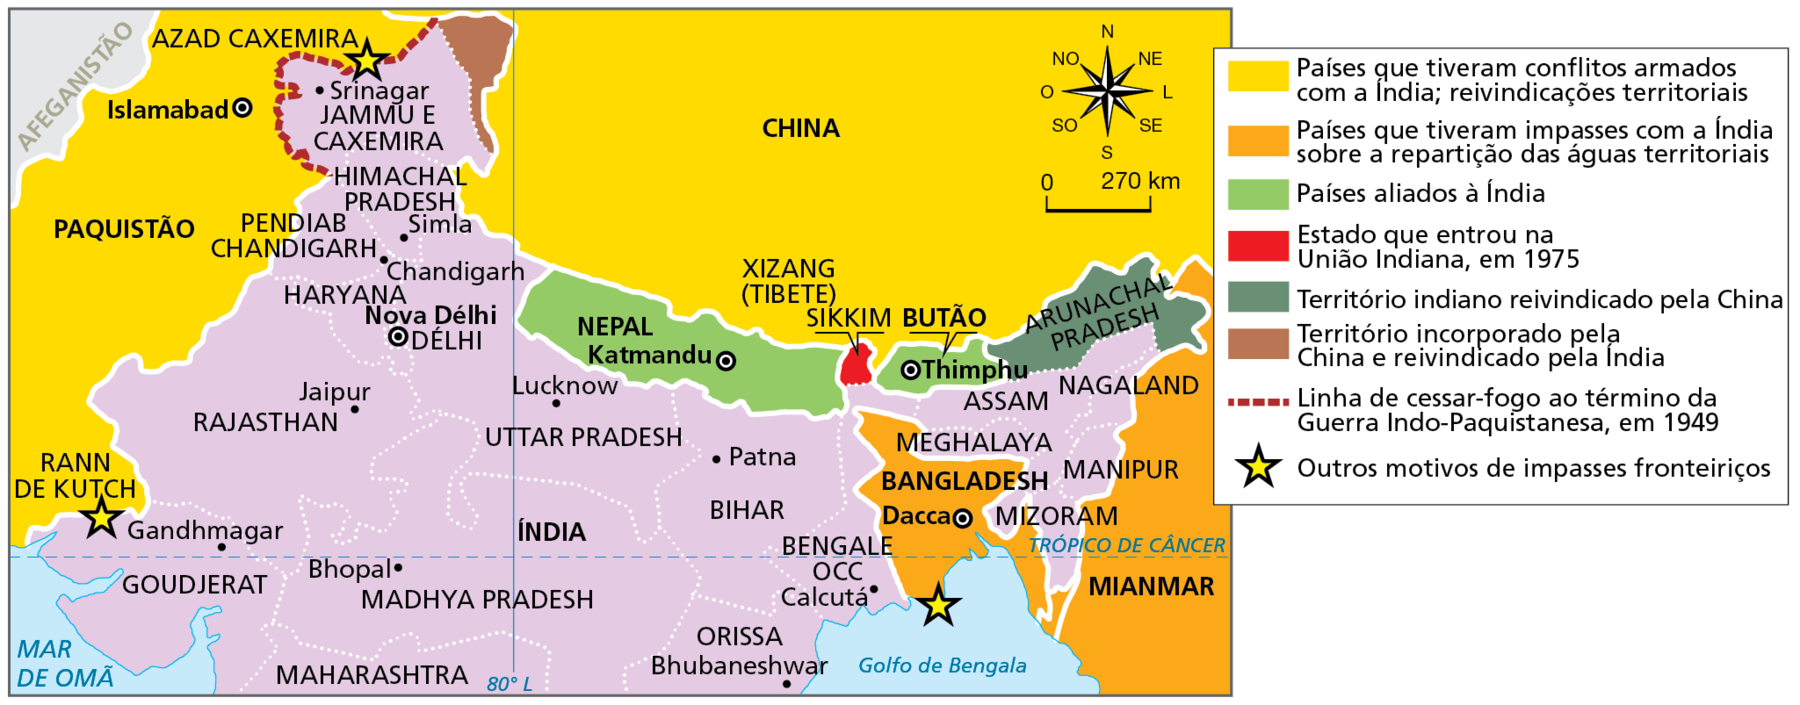 Mapa. Problemas fronteiriços no norte da Índia. Mapa com parte do território norte da Índia, Parte do Paquistão, China, Nepal, Butão e Mianmar onde são evidenciadas por meio de cores as relações e disputas estabelecidas com a Índia. 
Países que tiveram conflitos armados com a Índia: reivindicações territoriais (em amarelo): China, Paquistão. 
Países que tiveram impasses com a Índia sobre a repartição das águas territoriais (em laranja): Bangladesh, Mianmar. 
Países aliados à Índia (em verde): Nepal, Butão. 
Estado que entrou na União Indiana, em 1975 (em vermelho): região de Sikkim. 
Território indiano reivindicado pela China (em verde escuro): região de Arunacha Pradesh. 
Território incorporado pela China e reivindicado pela Índia (em marrom): leste de Jammu e Caxemira, na fronteira com a China.  
Linha de cessar-fogo ao término da Guerra Indo-Paquistanesa, em 1949 (linha marrom tracejado): entre Azad Caxemira e Jammu e Caxemira. 
Outros motivos de impasses fronteiriços (estrela): região de Rann de Kutch, no extremo oeste do estado de Goudjerat, fronteira com o Paquistão; problema situado no sul de Bangladesh; problema na divisa de Azad Caxemira com Srinagar.
Na parte de cima, à direita, rosa dos ventos e escala de 0 a 270 quilômetros.